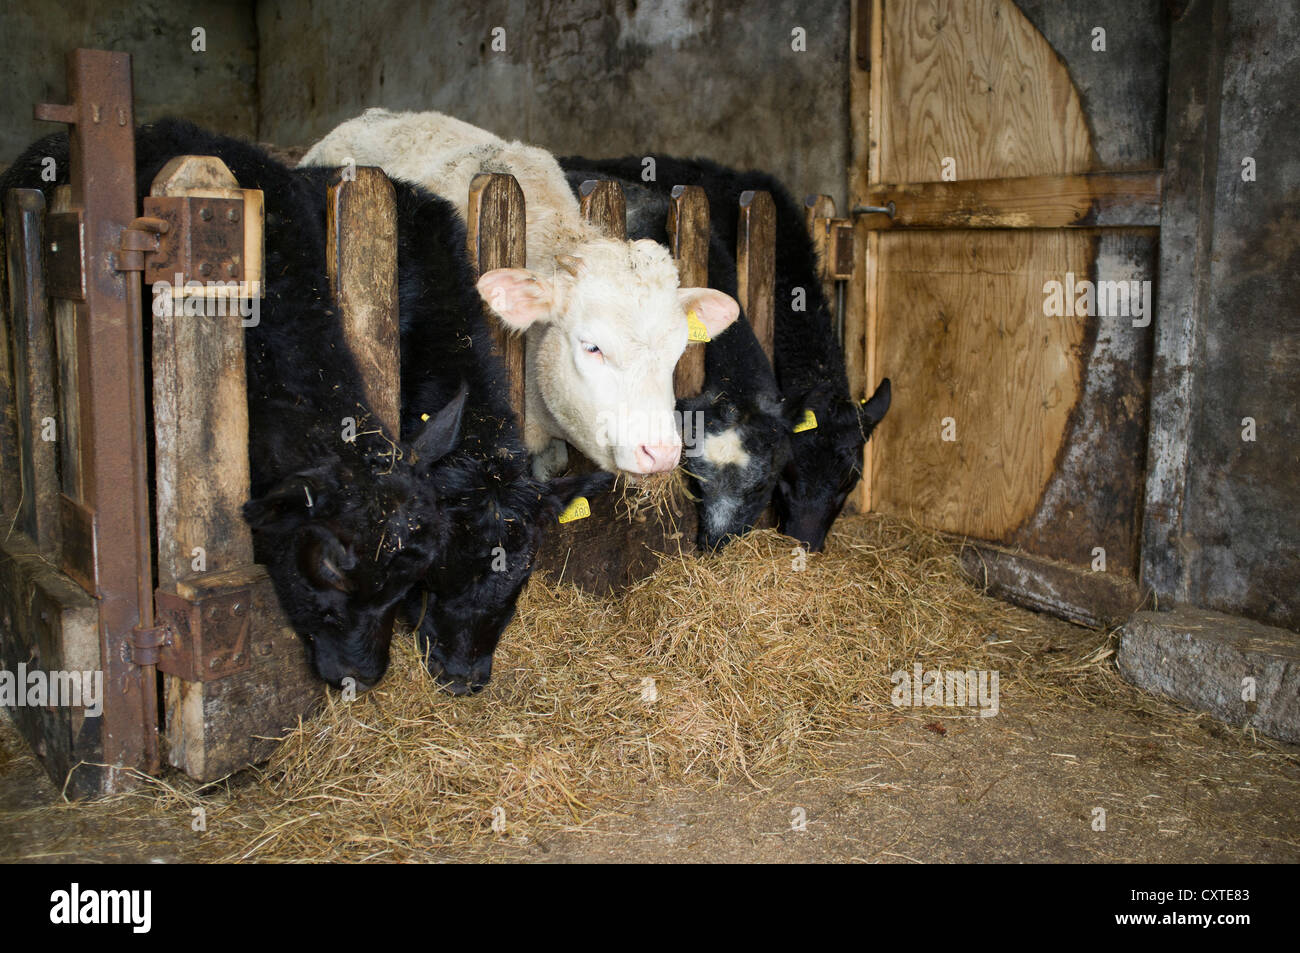 dh jeunes vaches nourrissant DU BŒUF Royaume-Uni bovins mangeant du fourrage grange de foin à l'intérieur royaume-uni abri ferme ecosse bétail scottish agriculture bâtiments animaux à l'intérieur du hangar Banque D'Images